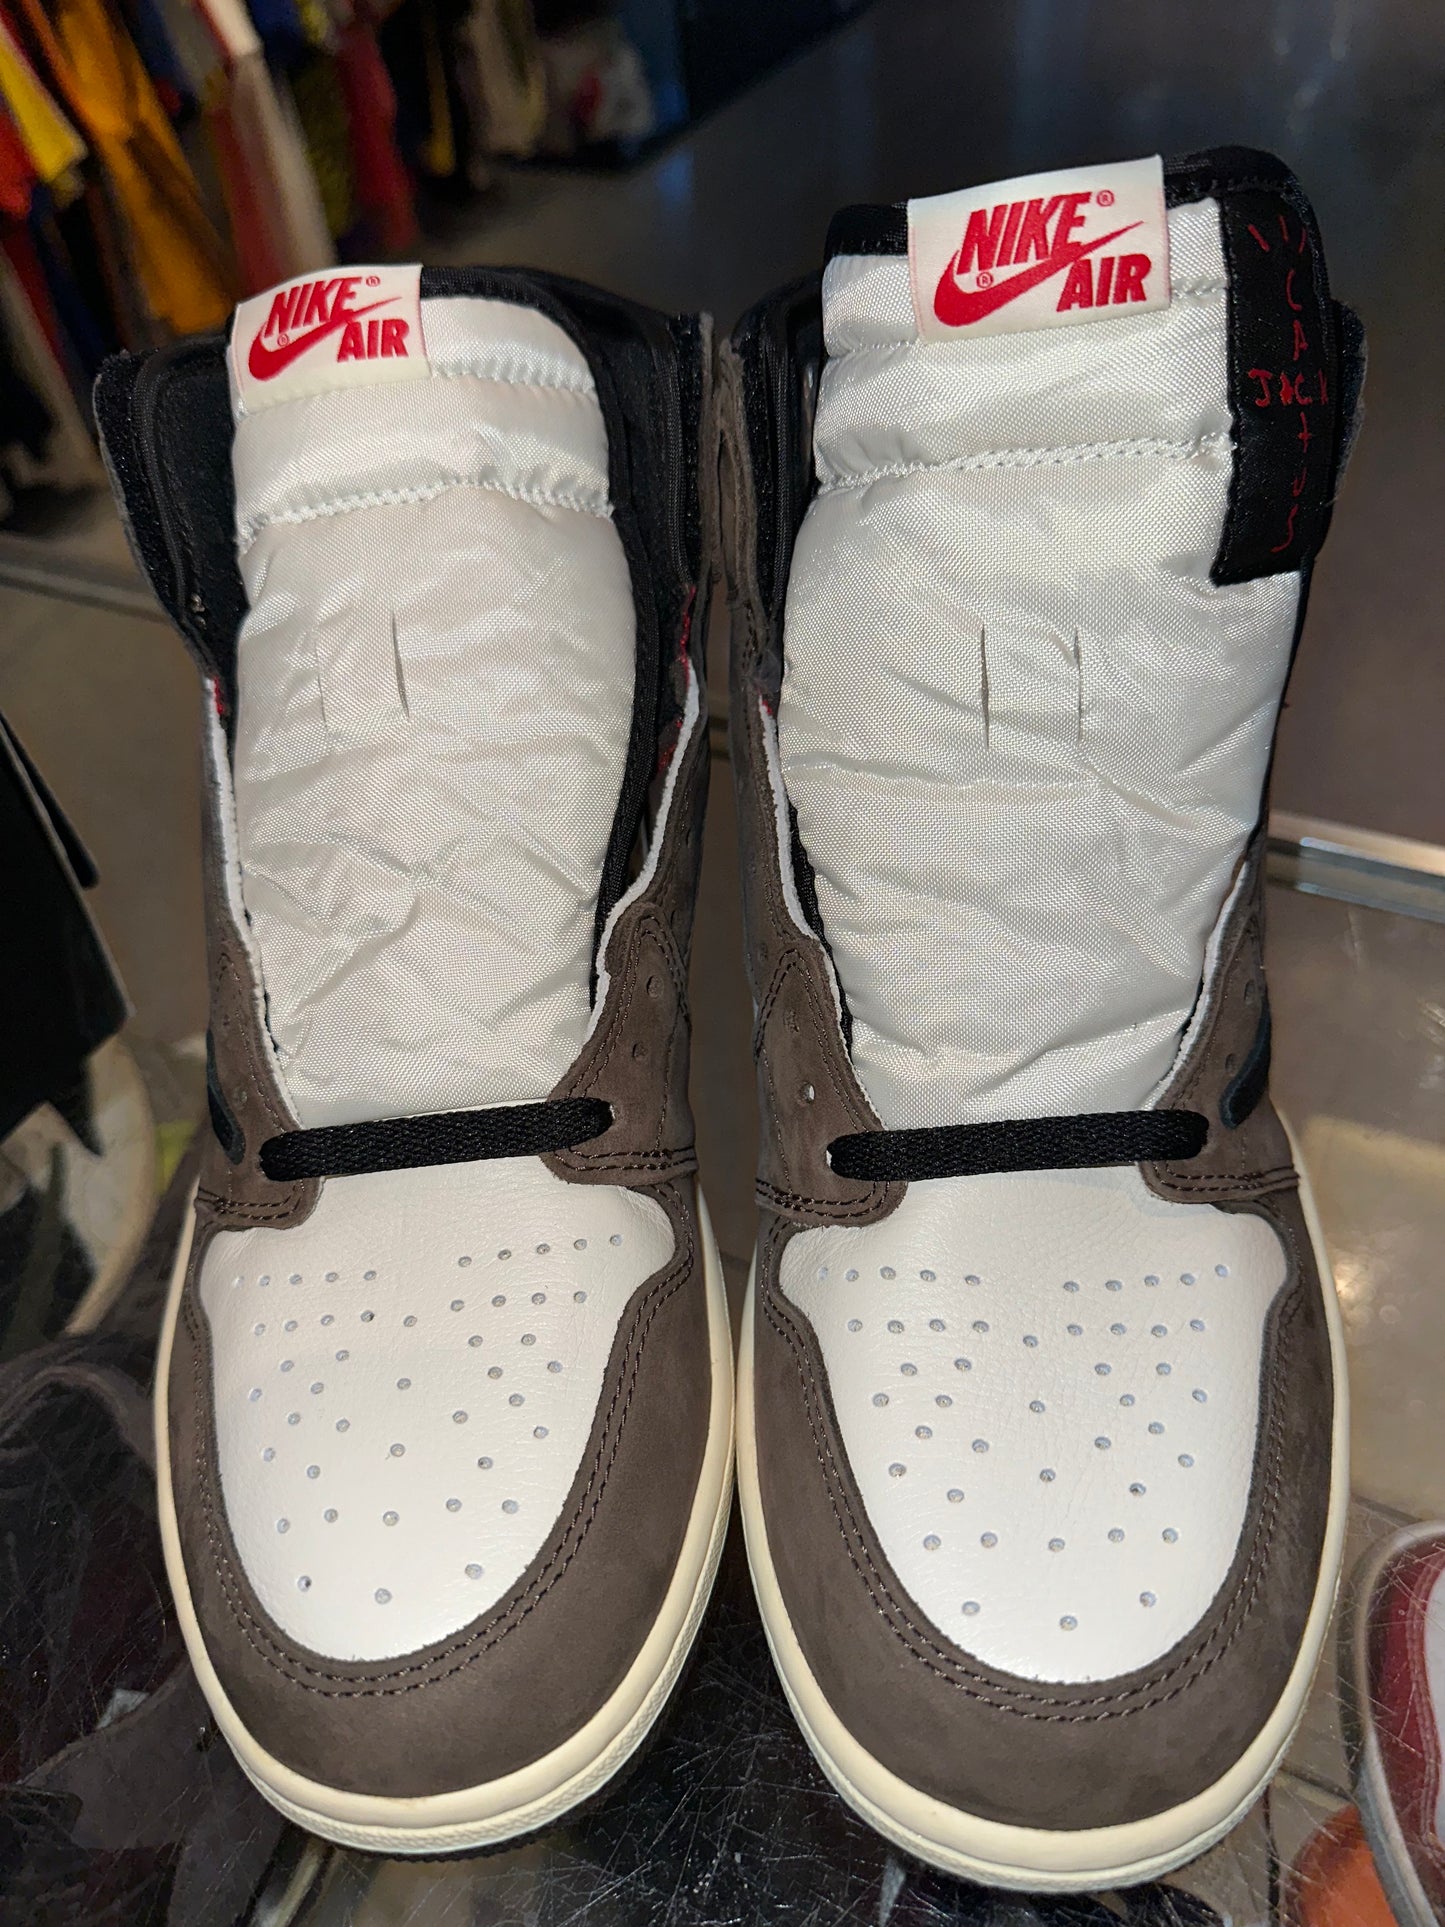 Size 10 Air Jordan 1 “Travis Scott” Brand New (Mall)